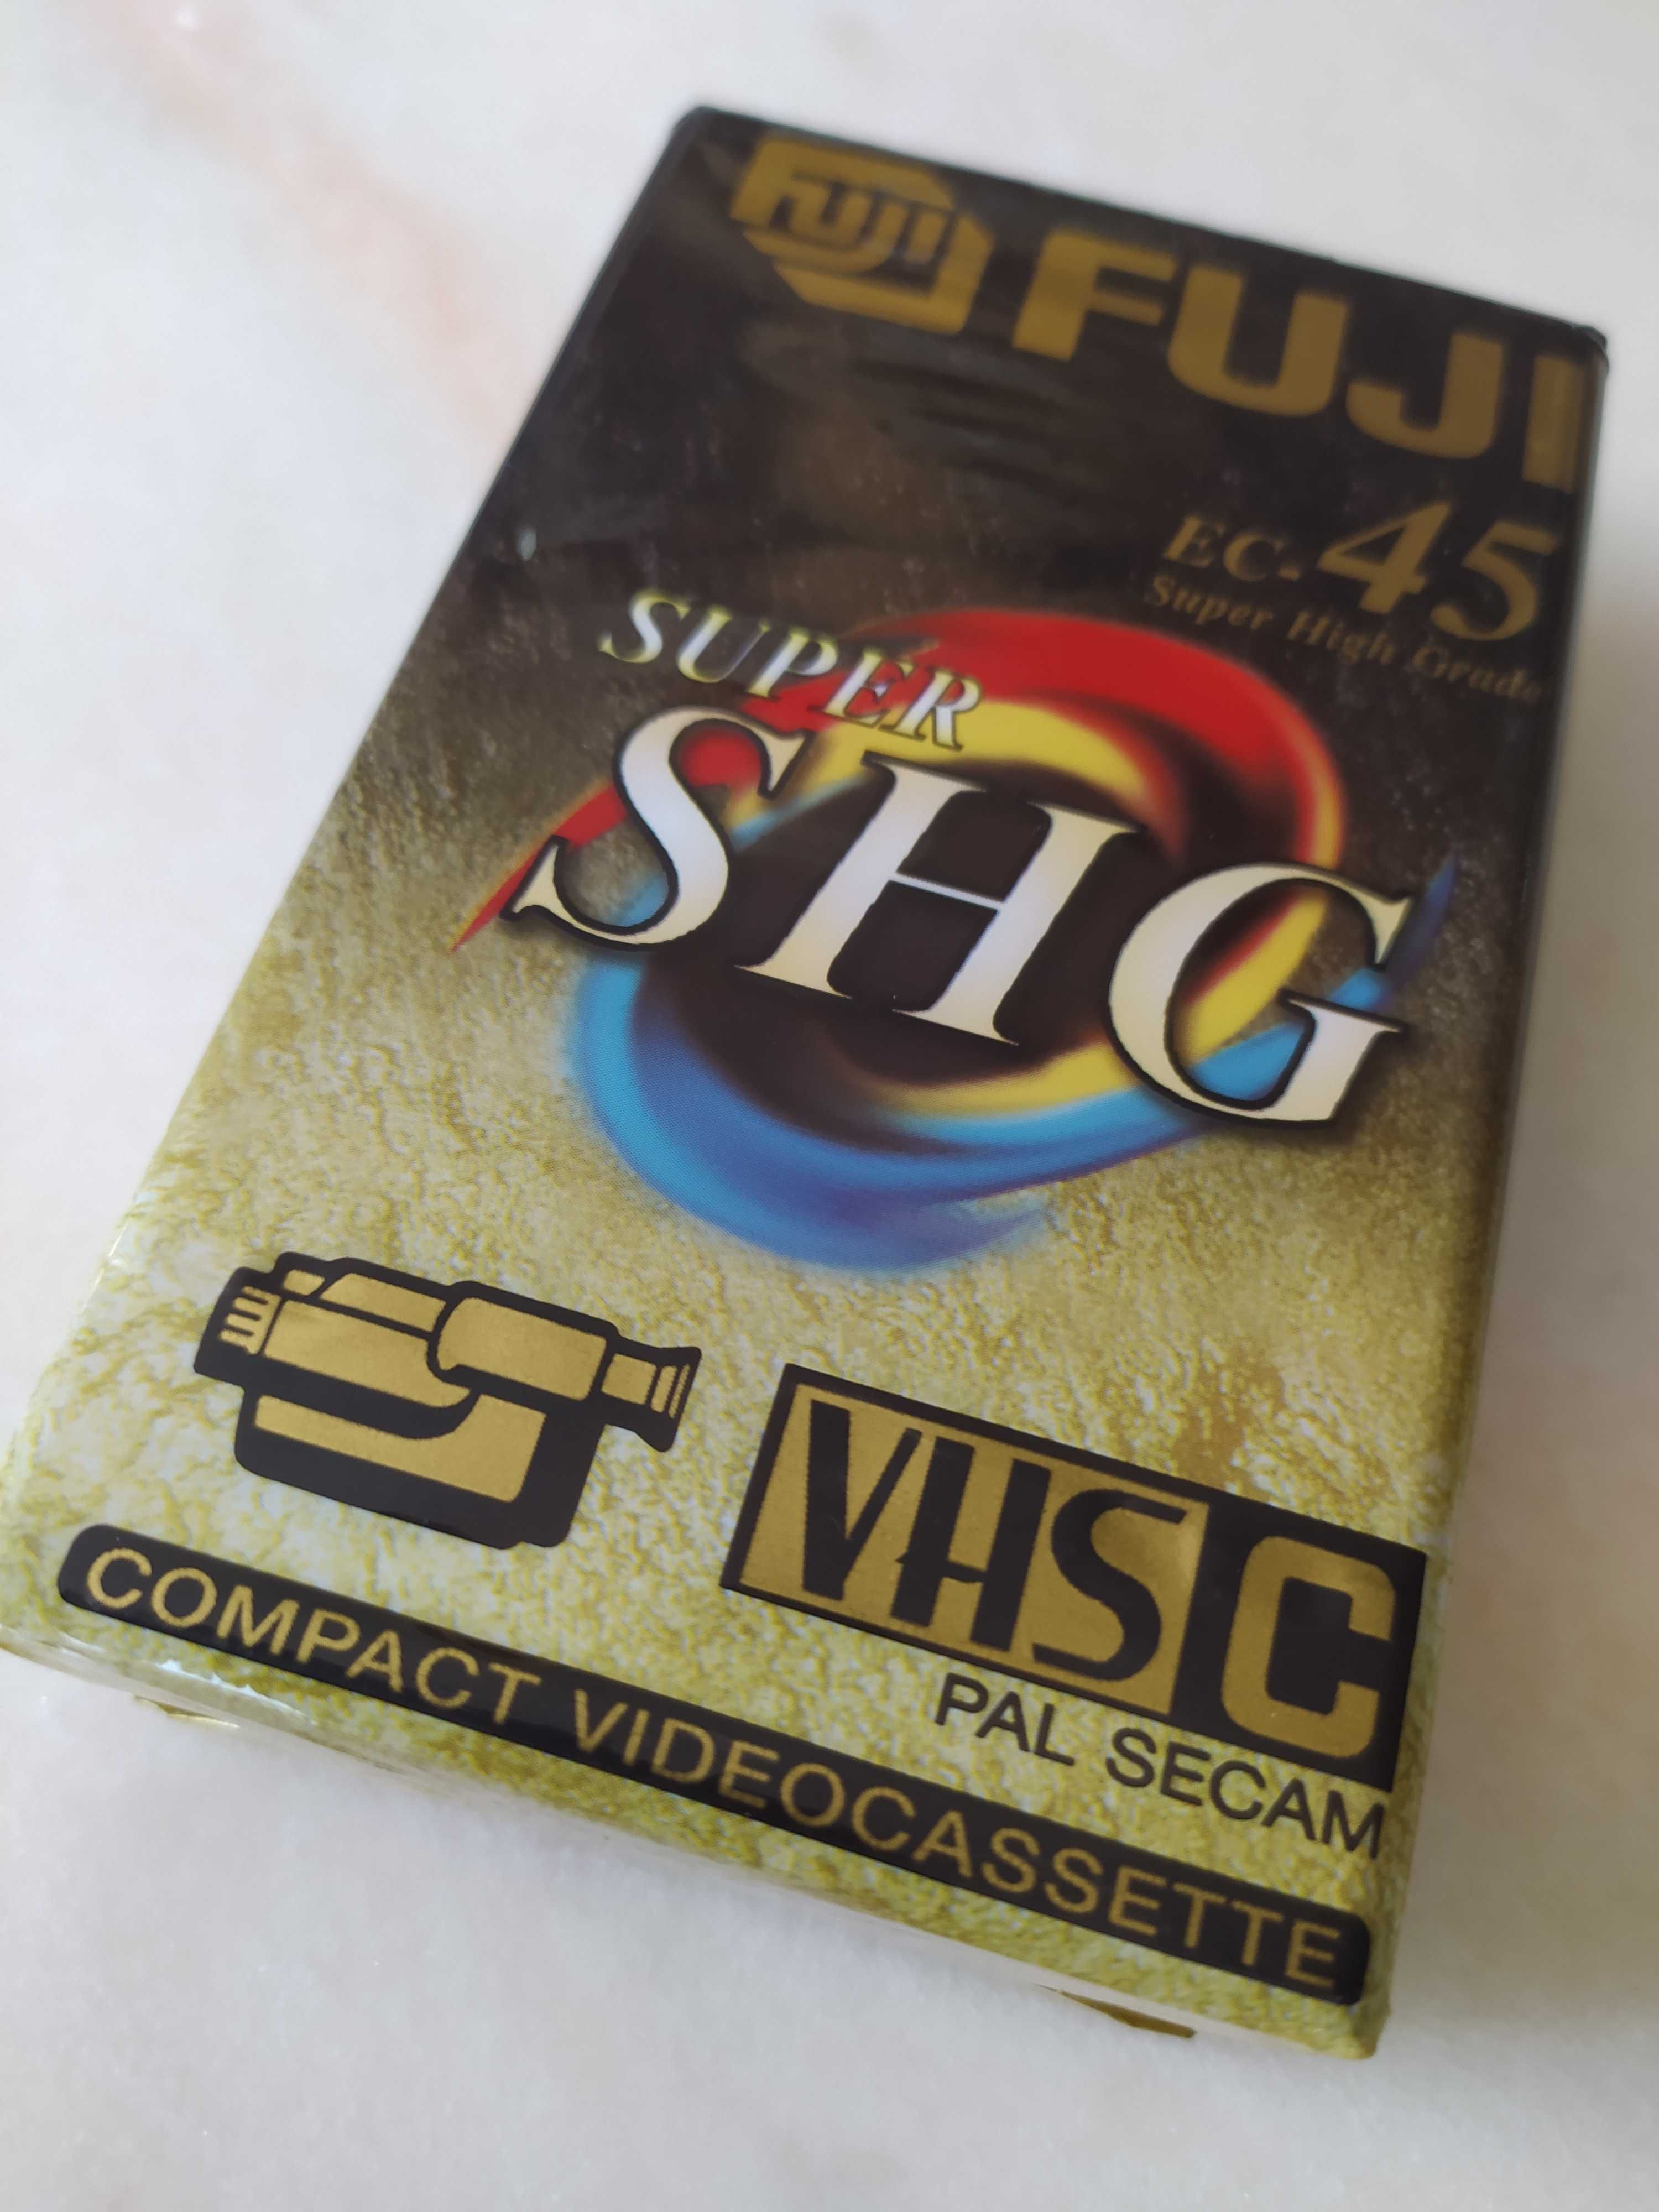 Kaseta VHS Fuji EC-45 Super SHG